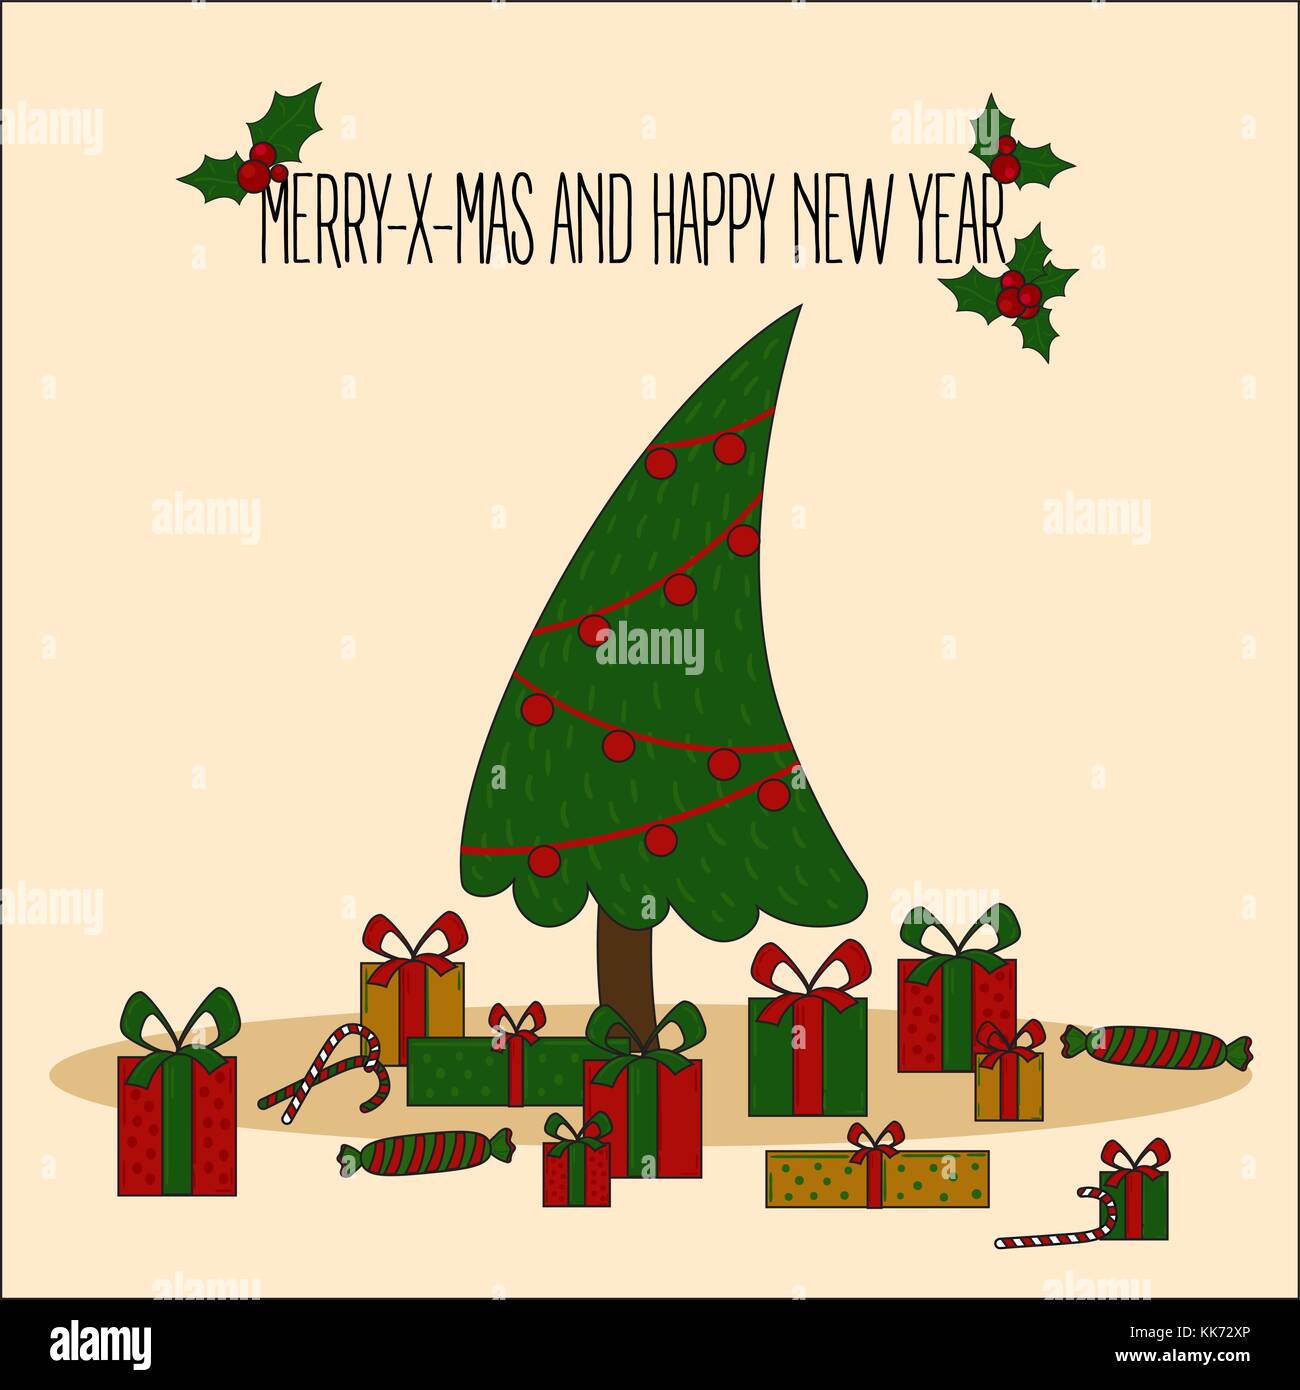 Weihnachtsbaum dekoriert Vector Illustration. Deko Kugeln und Glühlampe Kette, Geschenkboxen in farbenfrohen cartoon Flat Style. frohe Weihnachten und einen Stock Vektor